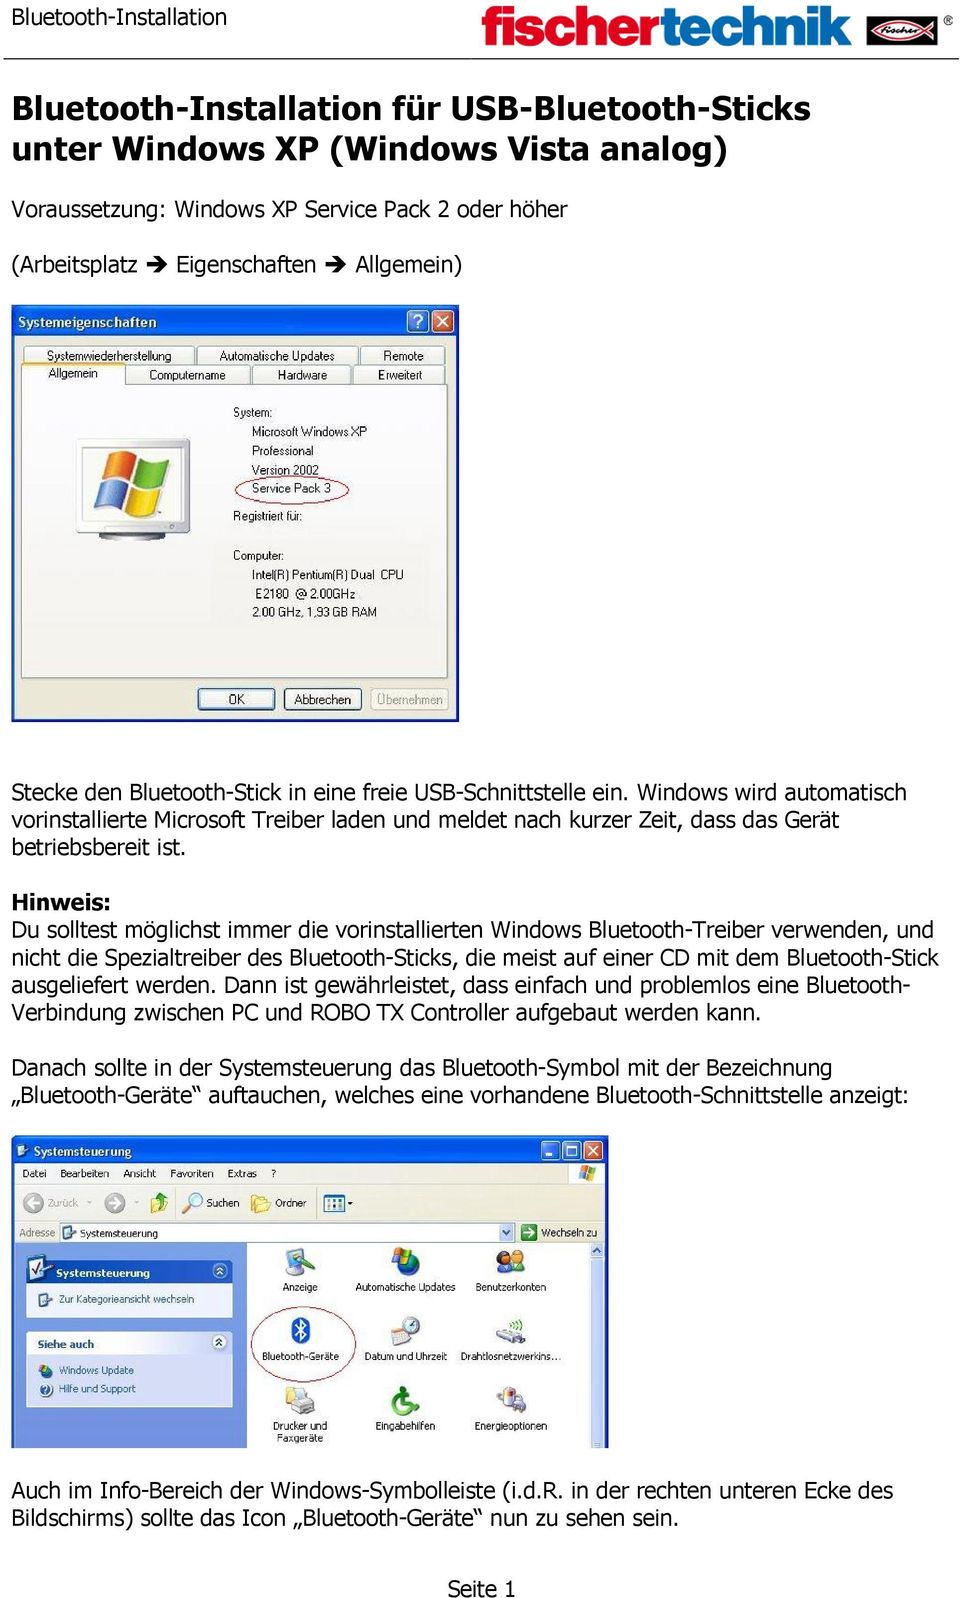 bluetooth activesync e book for windows xp service deck 3